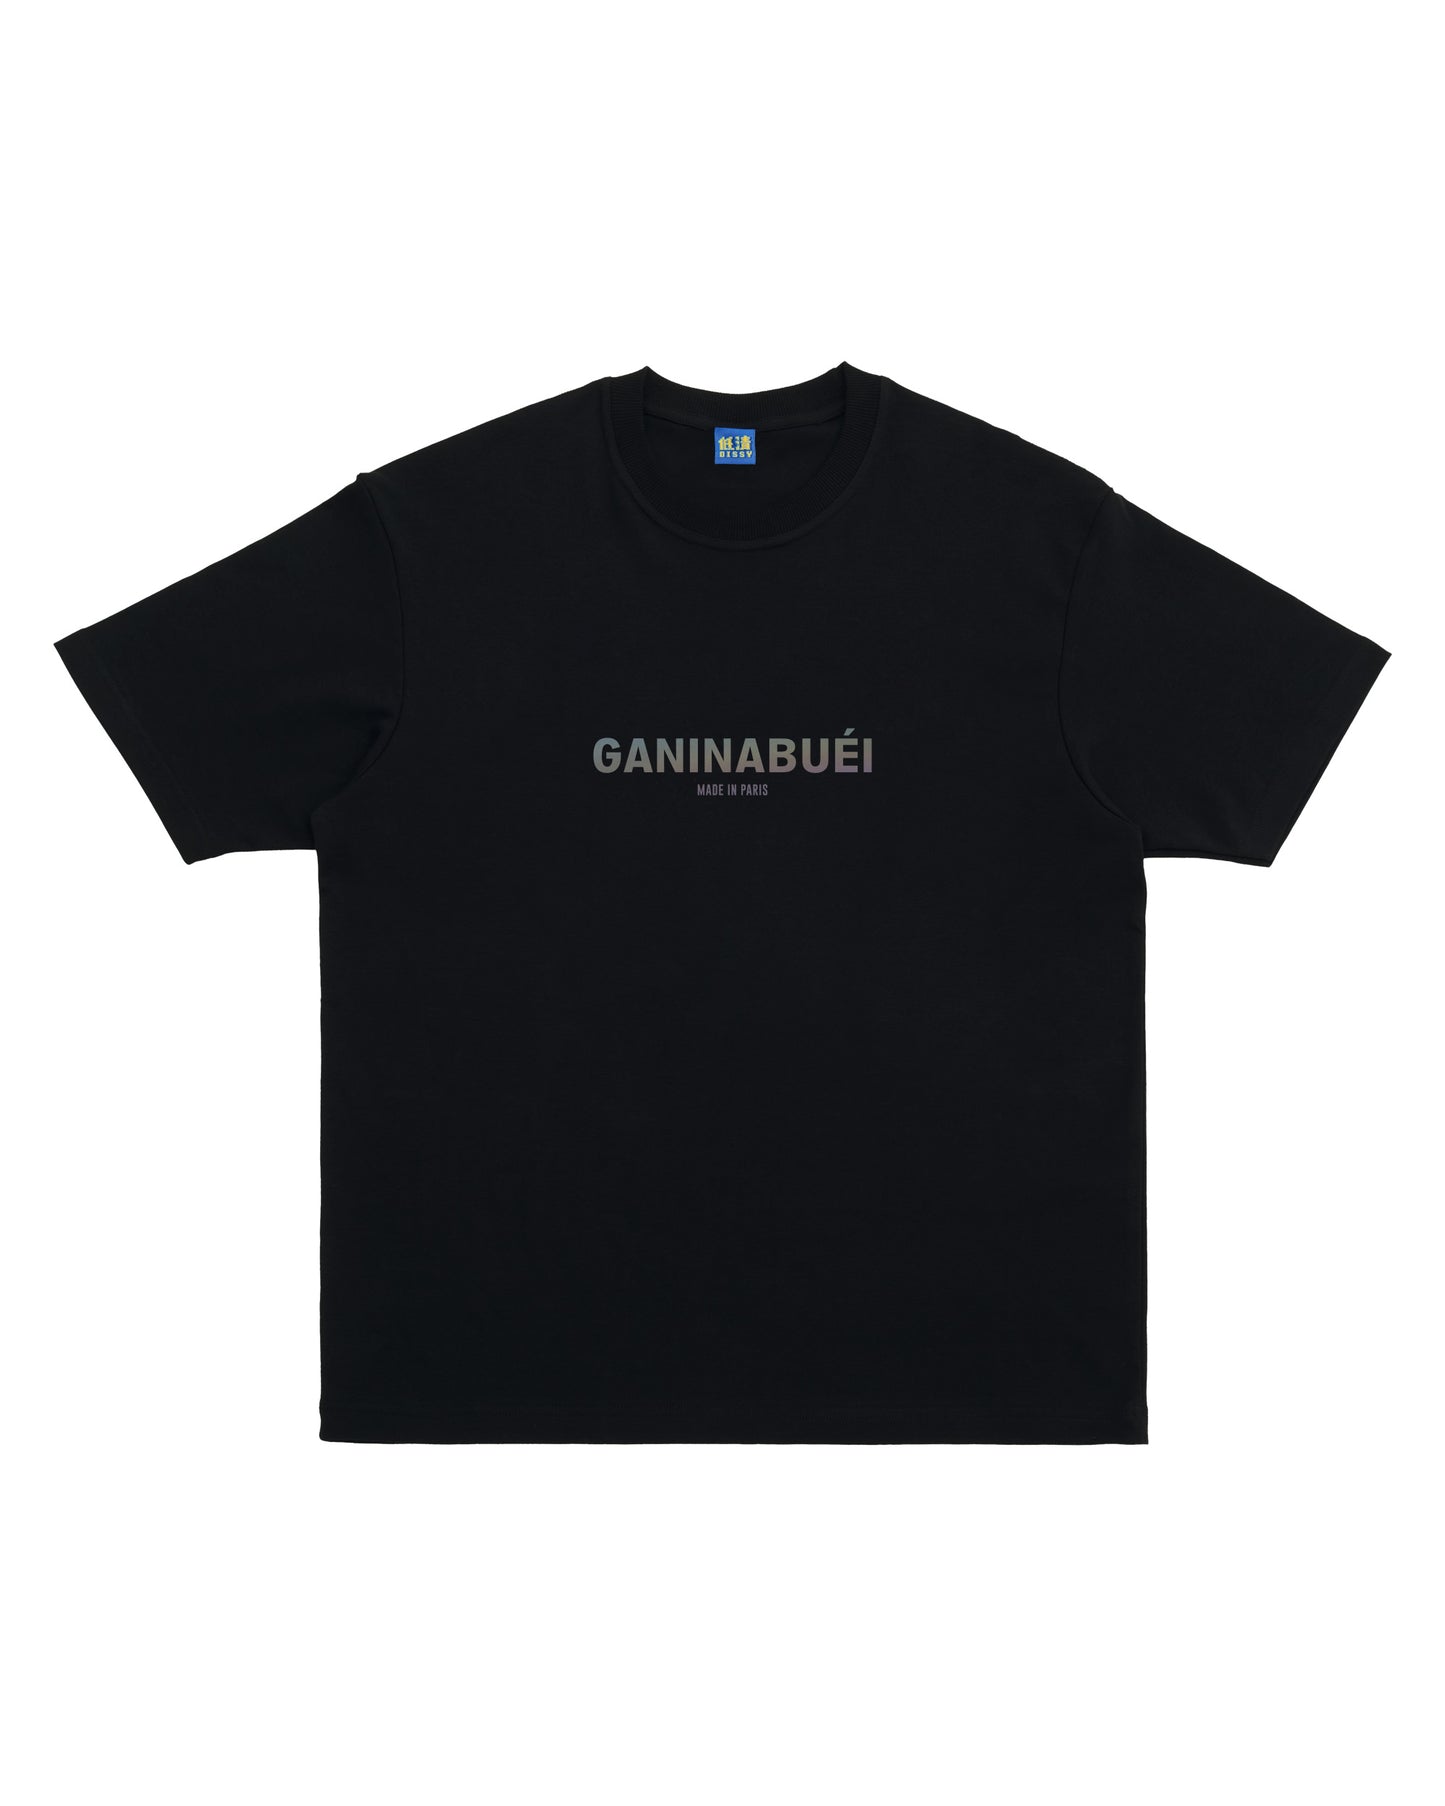 GANINABUEI RAINBOW REFLECTIVE TEE (BLACK)